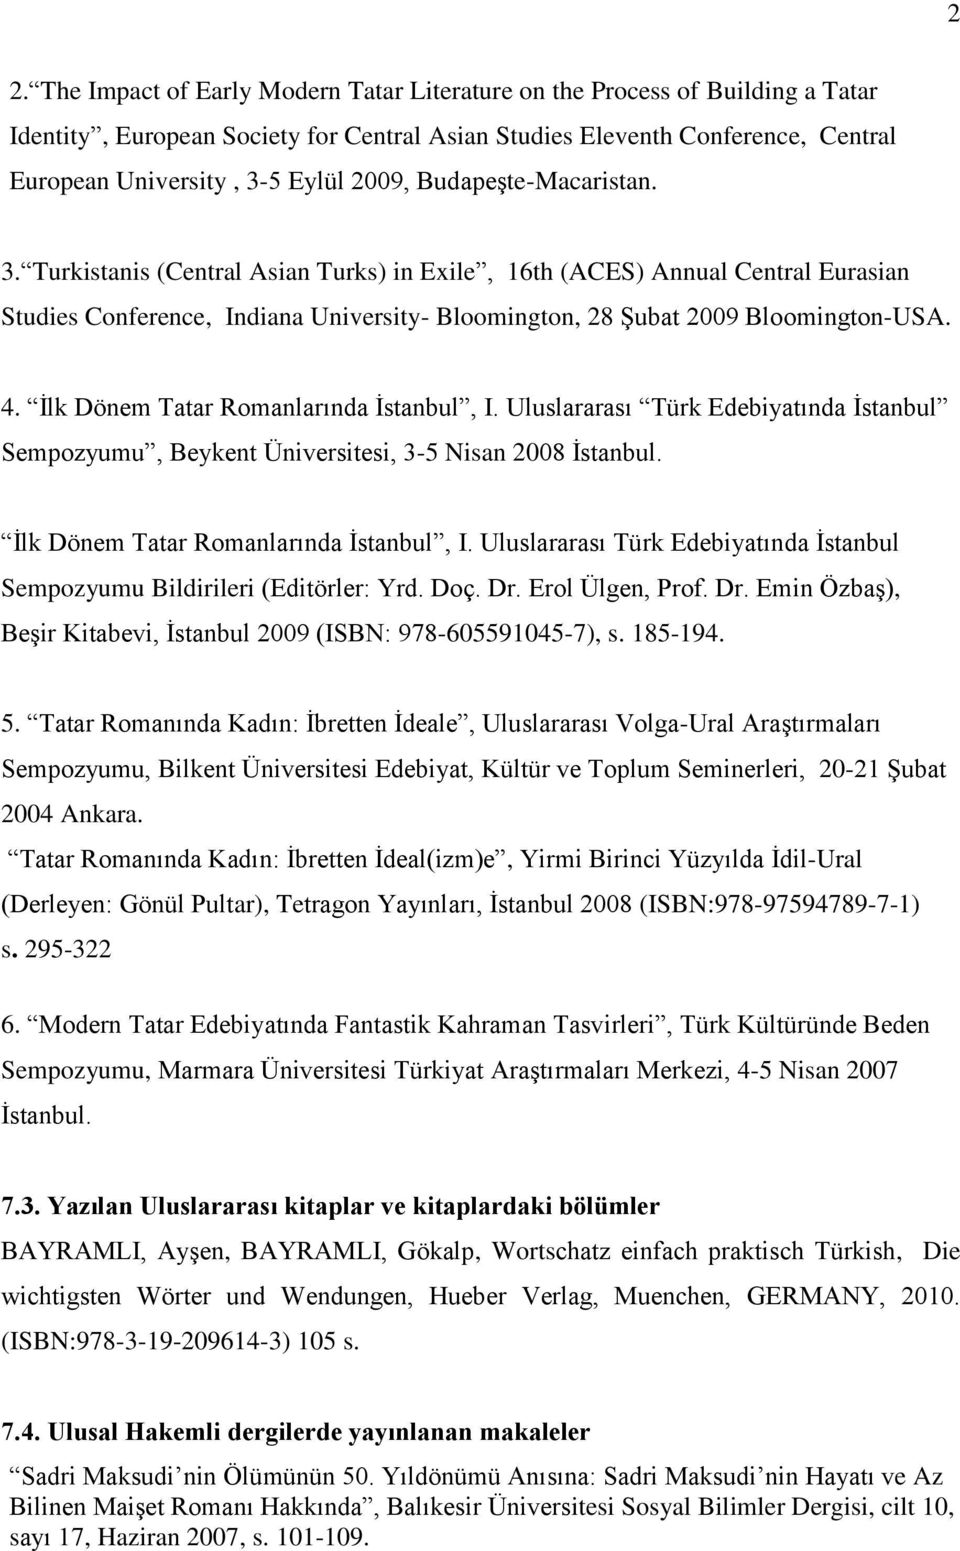 İlk Dönem Tatar Romanlarında İstanbul, I. Uluslararası Türk Edebiyatında İstanbul Sempozyumu, Beykent Üniversitesi, 3-5 Nisan 2008 İstanbul. İlk Dönem Tatar Romanlarında İstanbul, I.